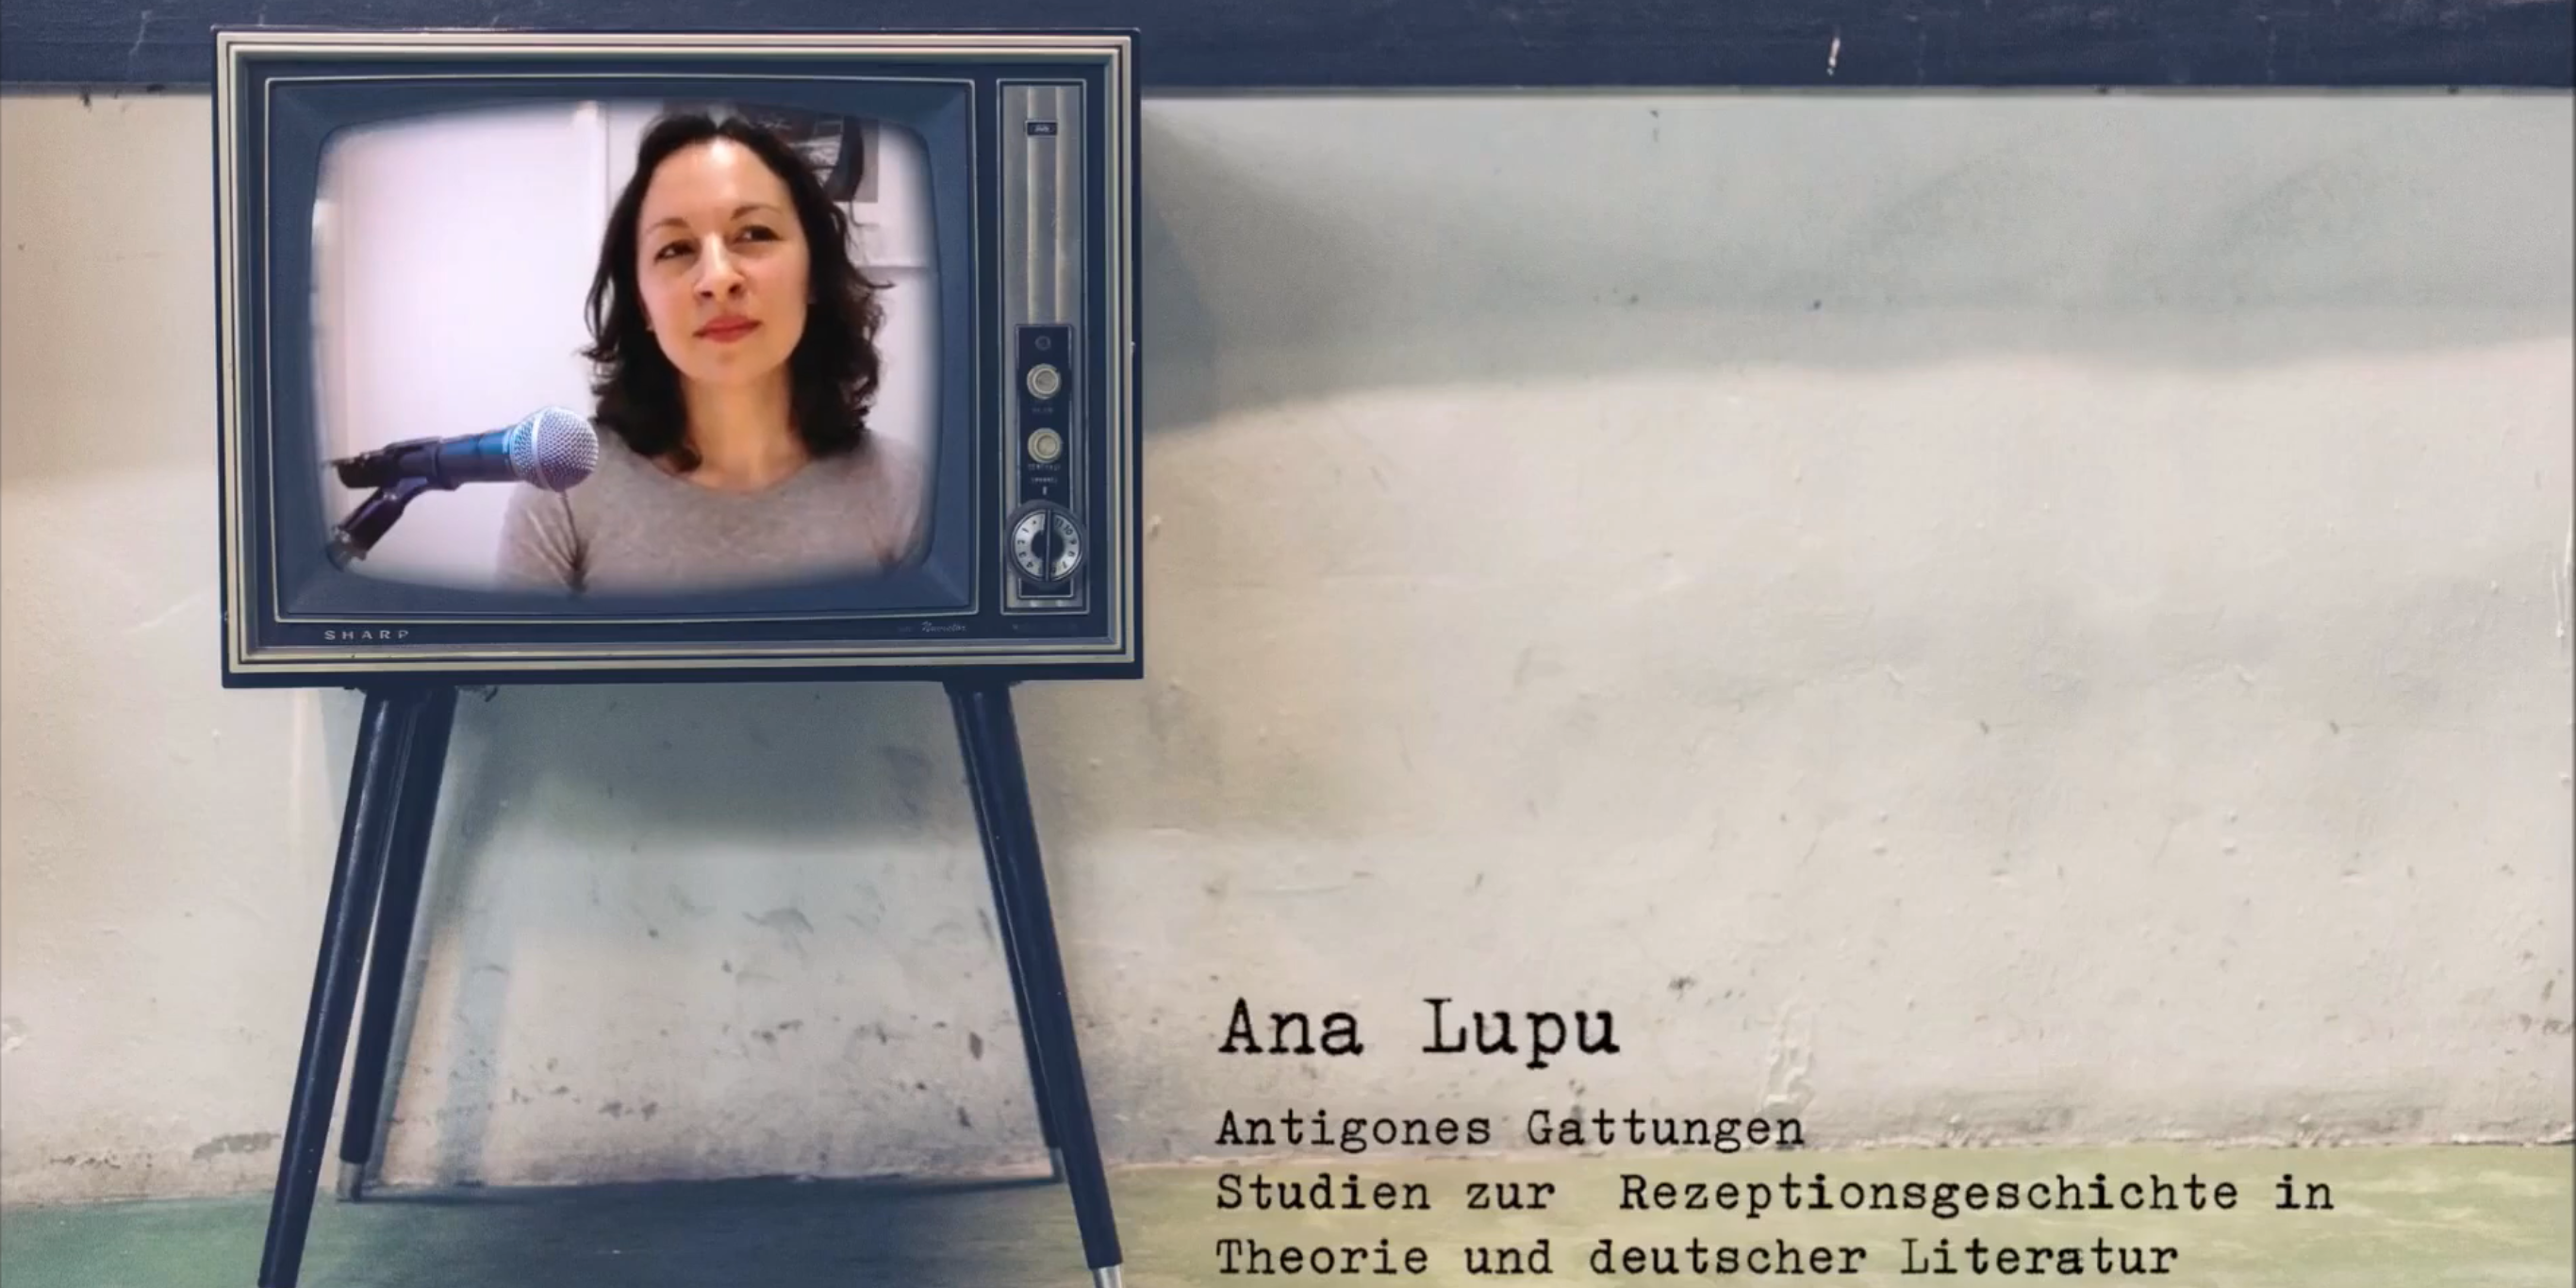 Das BIld zeit das Startbild des Youtube-Videos mit Ana Lupu.